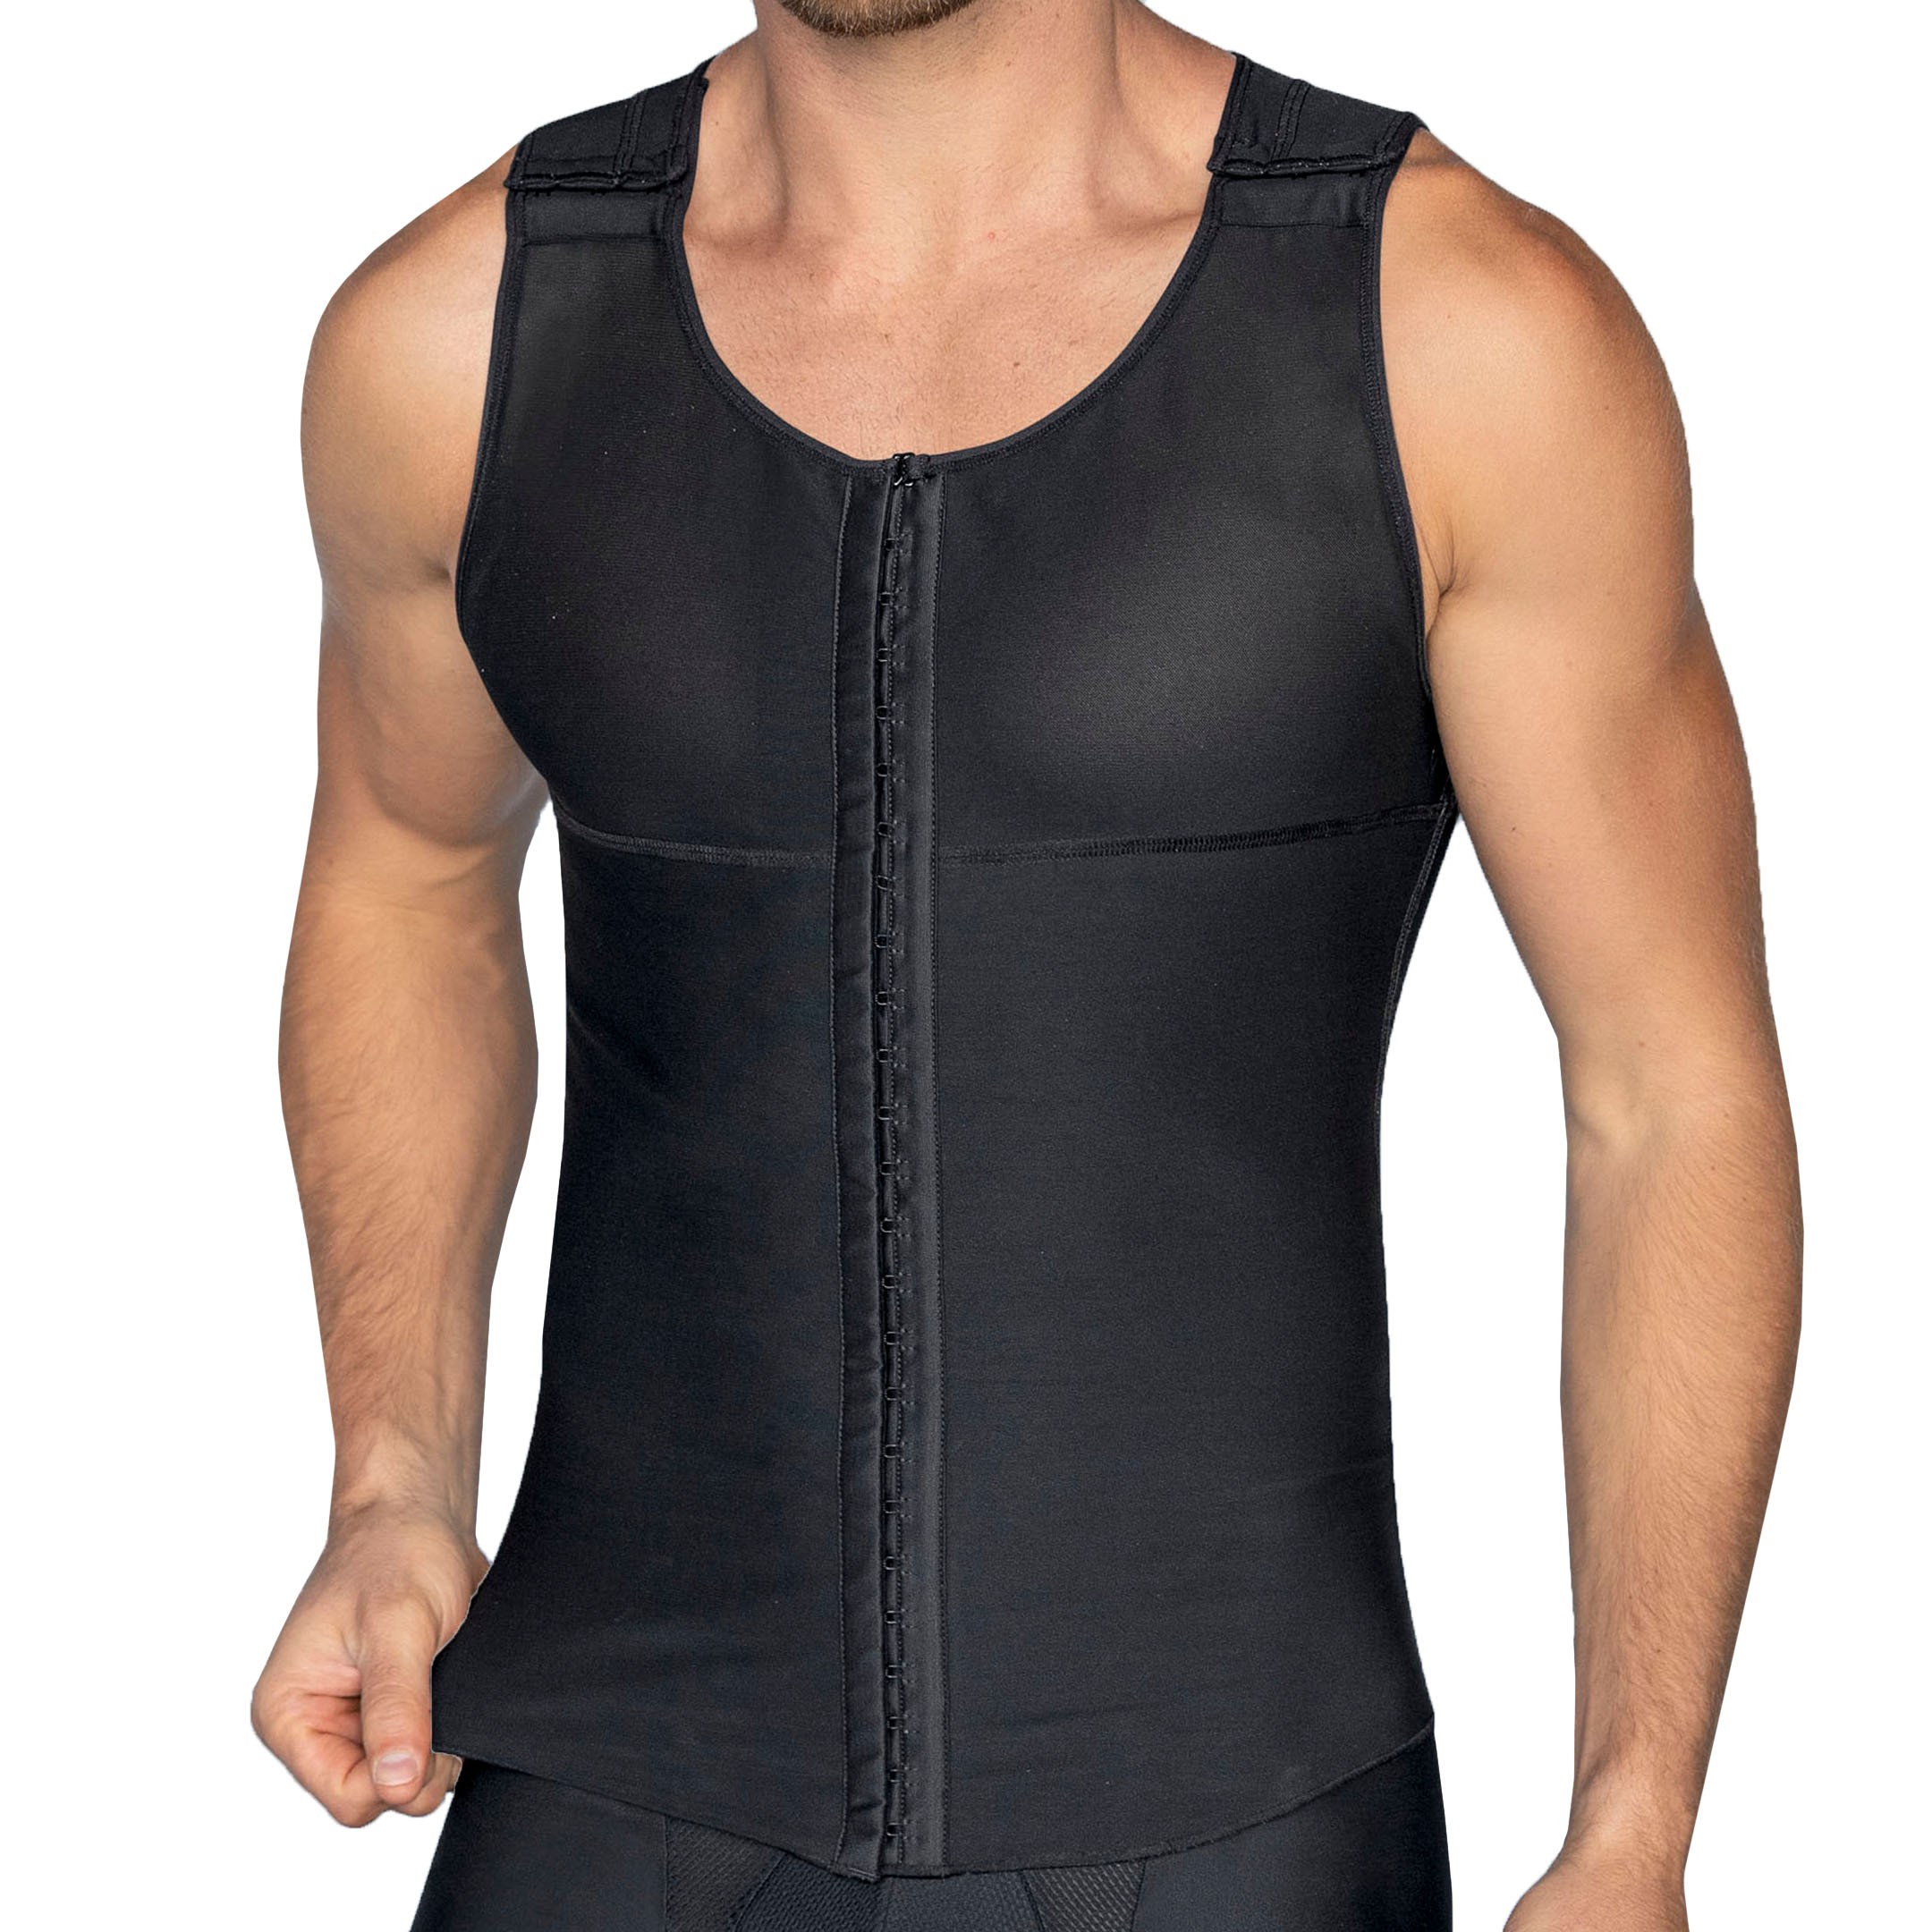 LEO Firm Compression Shaper Vest - Black | INDERWEAR